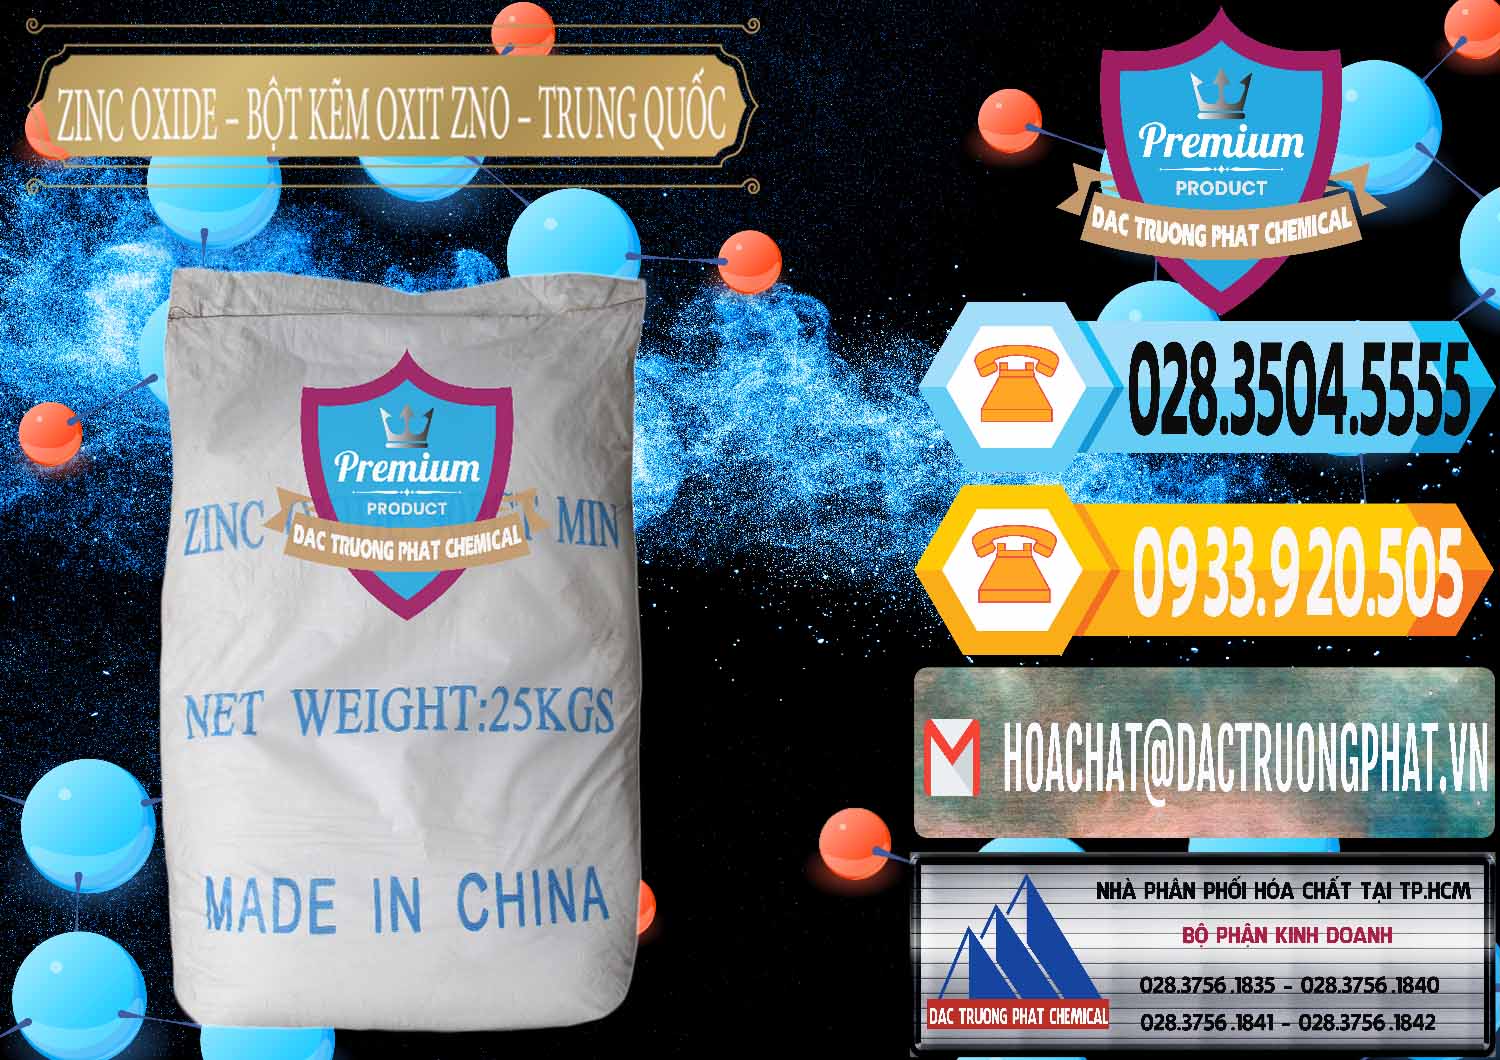 Đơn vị bán & phân phối Zinc Oxide - Bột Kẽm Oxit ZNO Trung Quốc China - 0182 - Nơi cung cấp ( nhập khẩu ) hóa chất tại TP.HCM - hoachattayrua.net